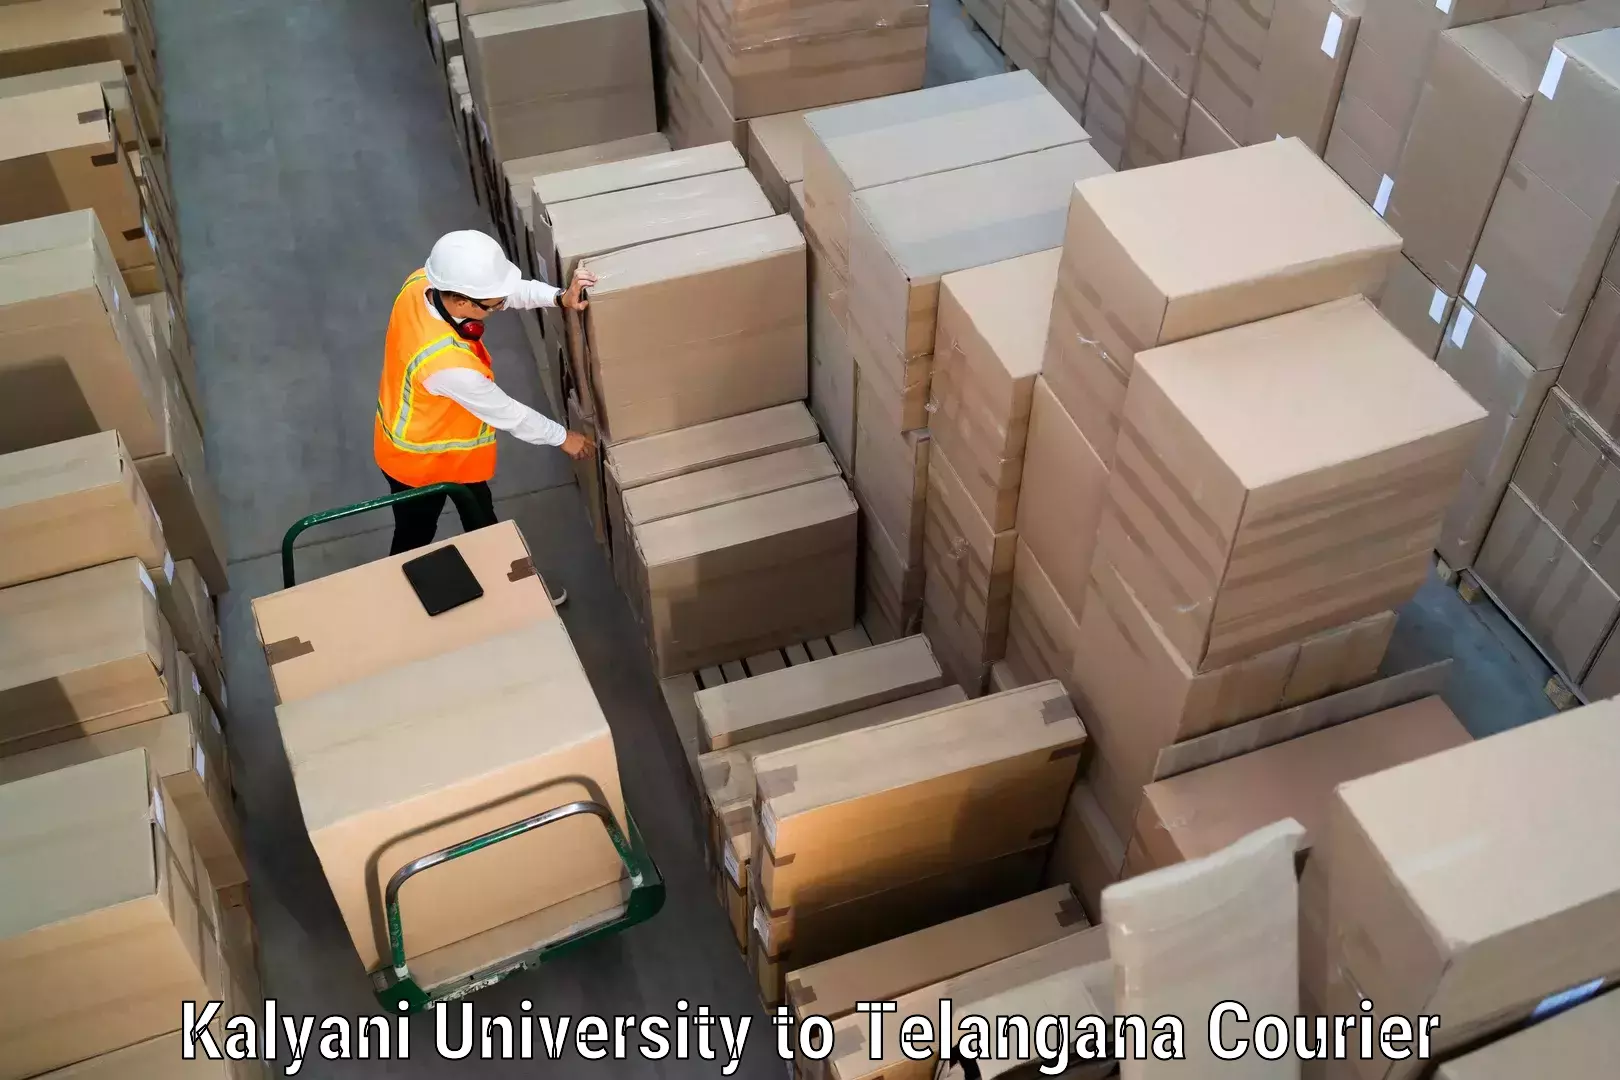 Courier service booking Kalyani University to Telangana